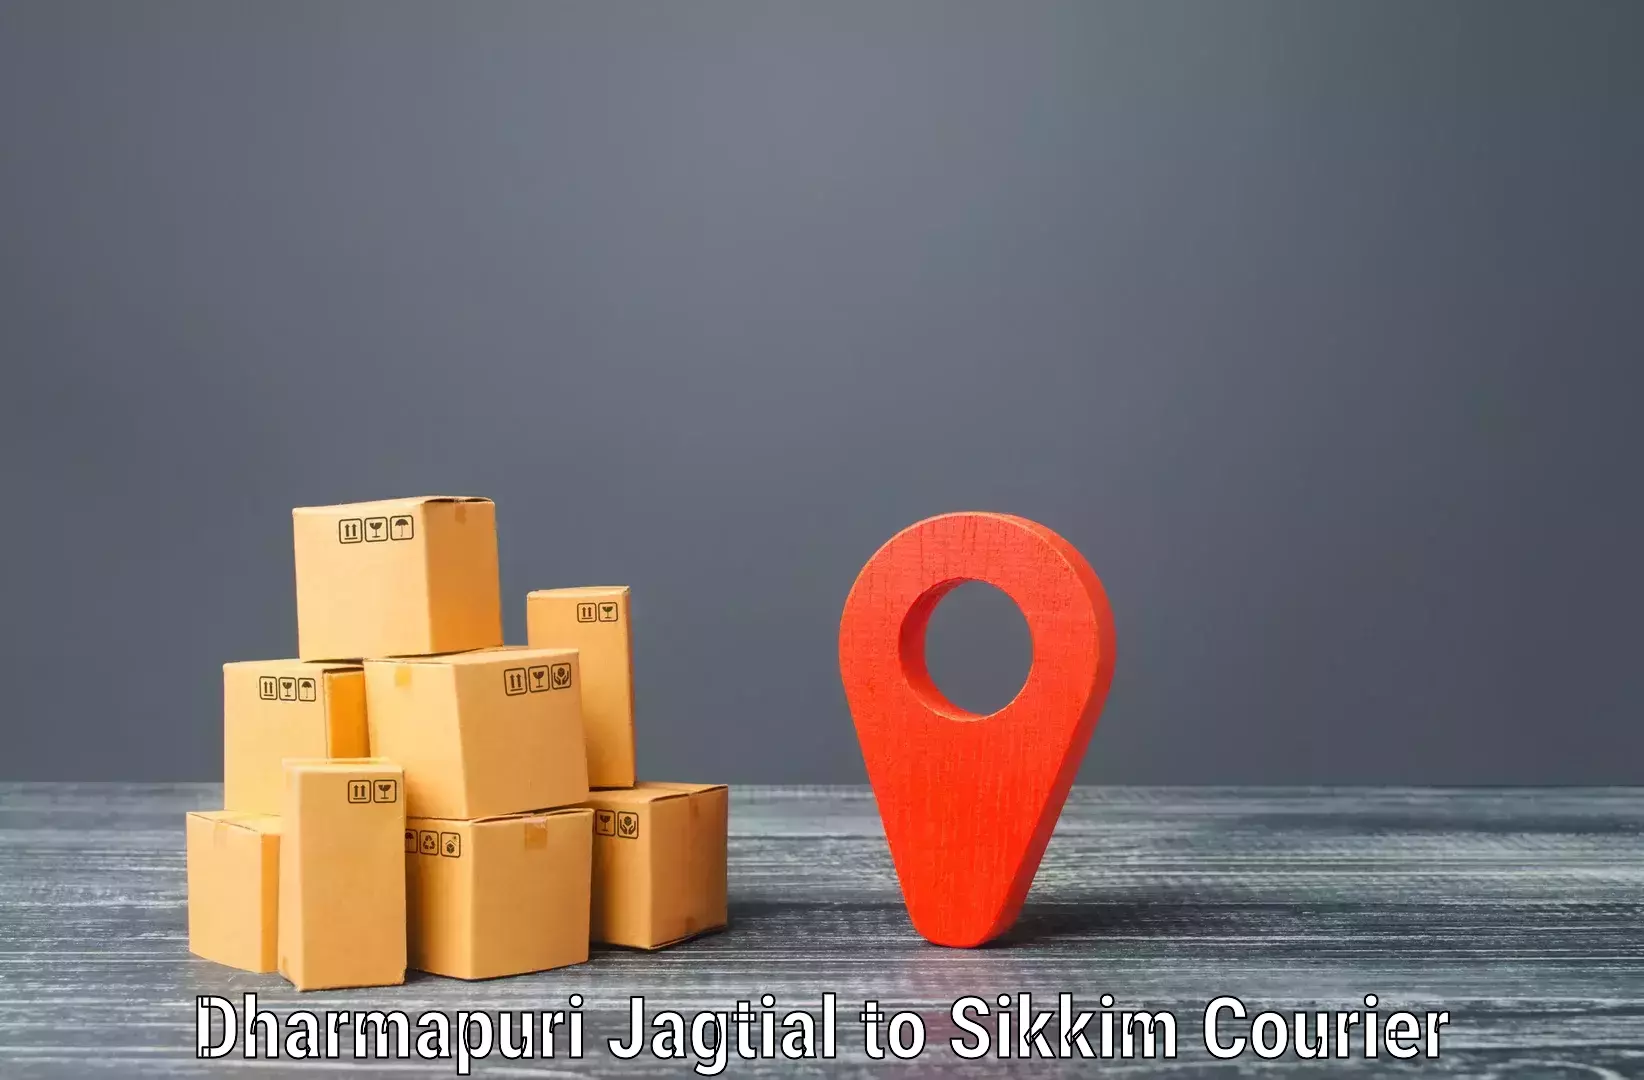 Enhanced tracking features in Dharmapuri Jagtial to Mangan